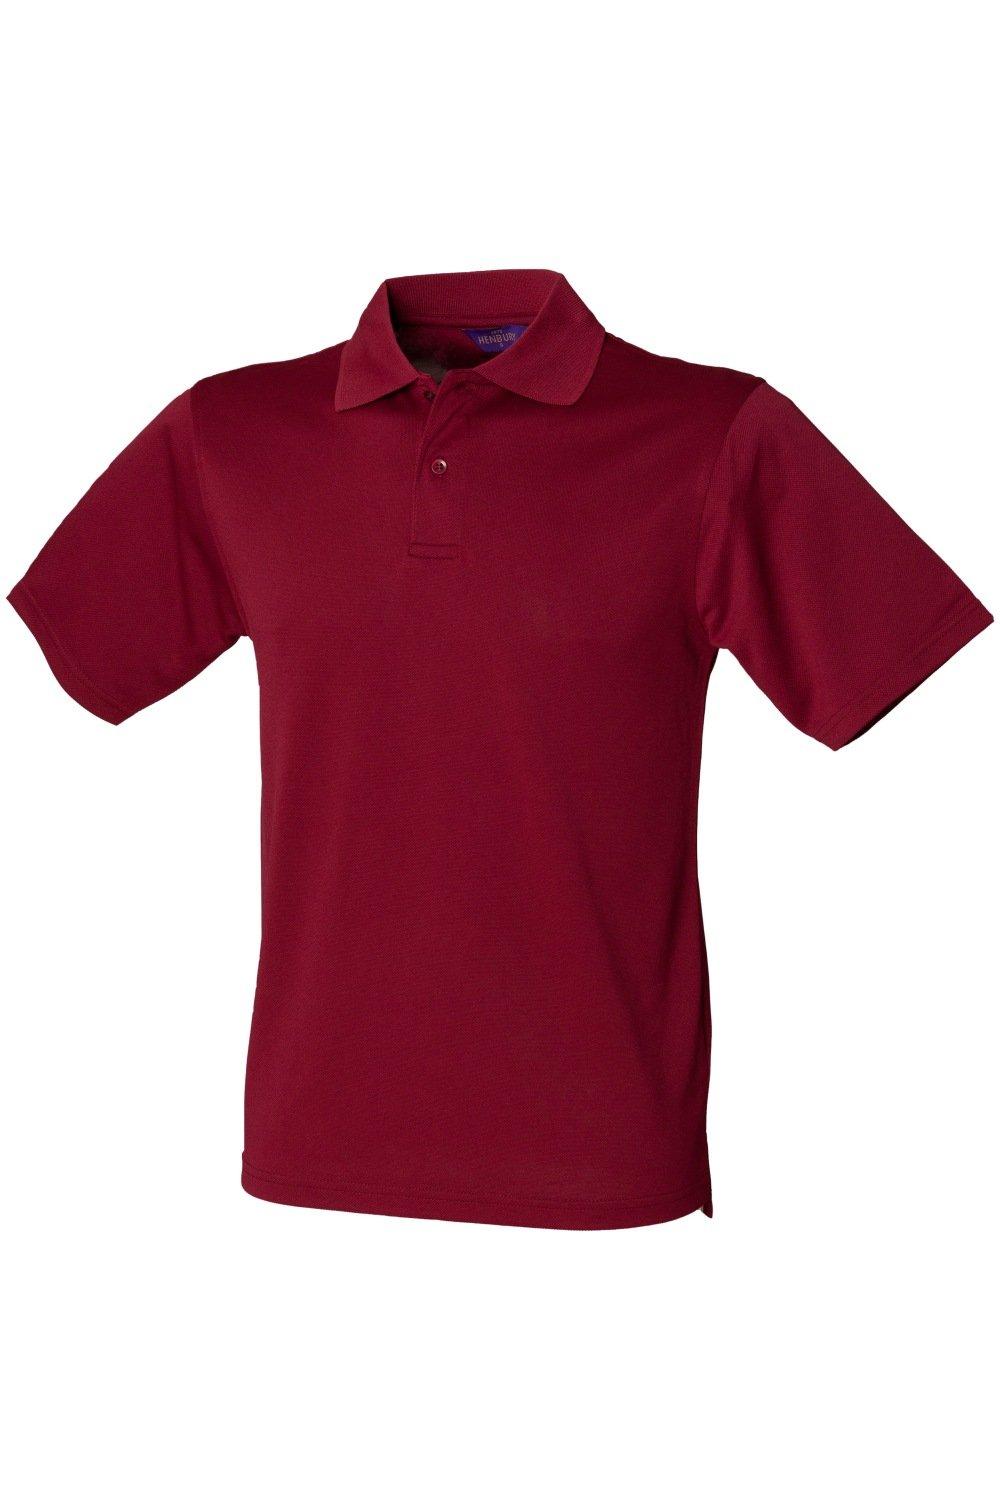 Рубашка поло Coolplus из пике Henbury, красный рубашка поло coolplus из пике henbury зеленый